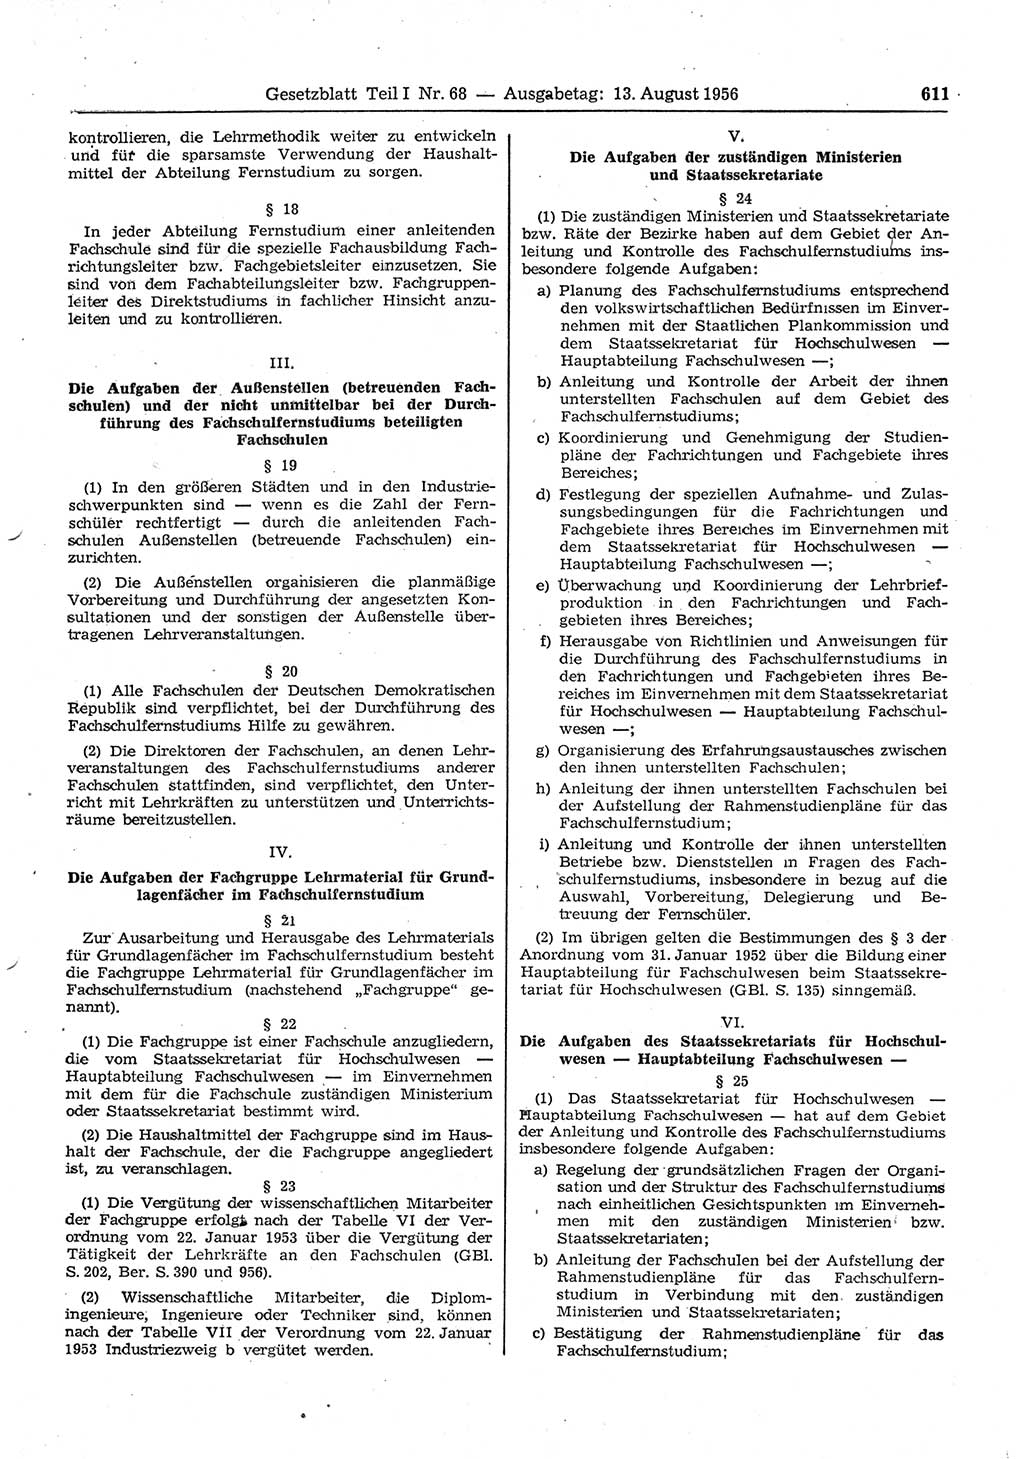 Gesetzblatt (GBl.) der Deutschen Demokratischen Republik (DDR) Teil Ⅰ 1956, Seite 611 (GBl. DDR Ⅰ 1956, S. 611)